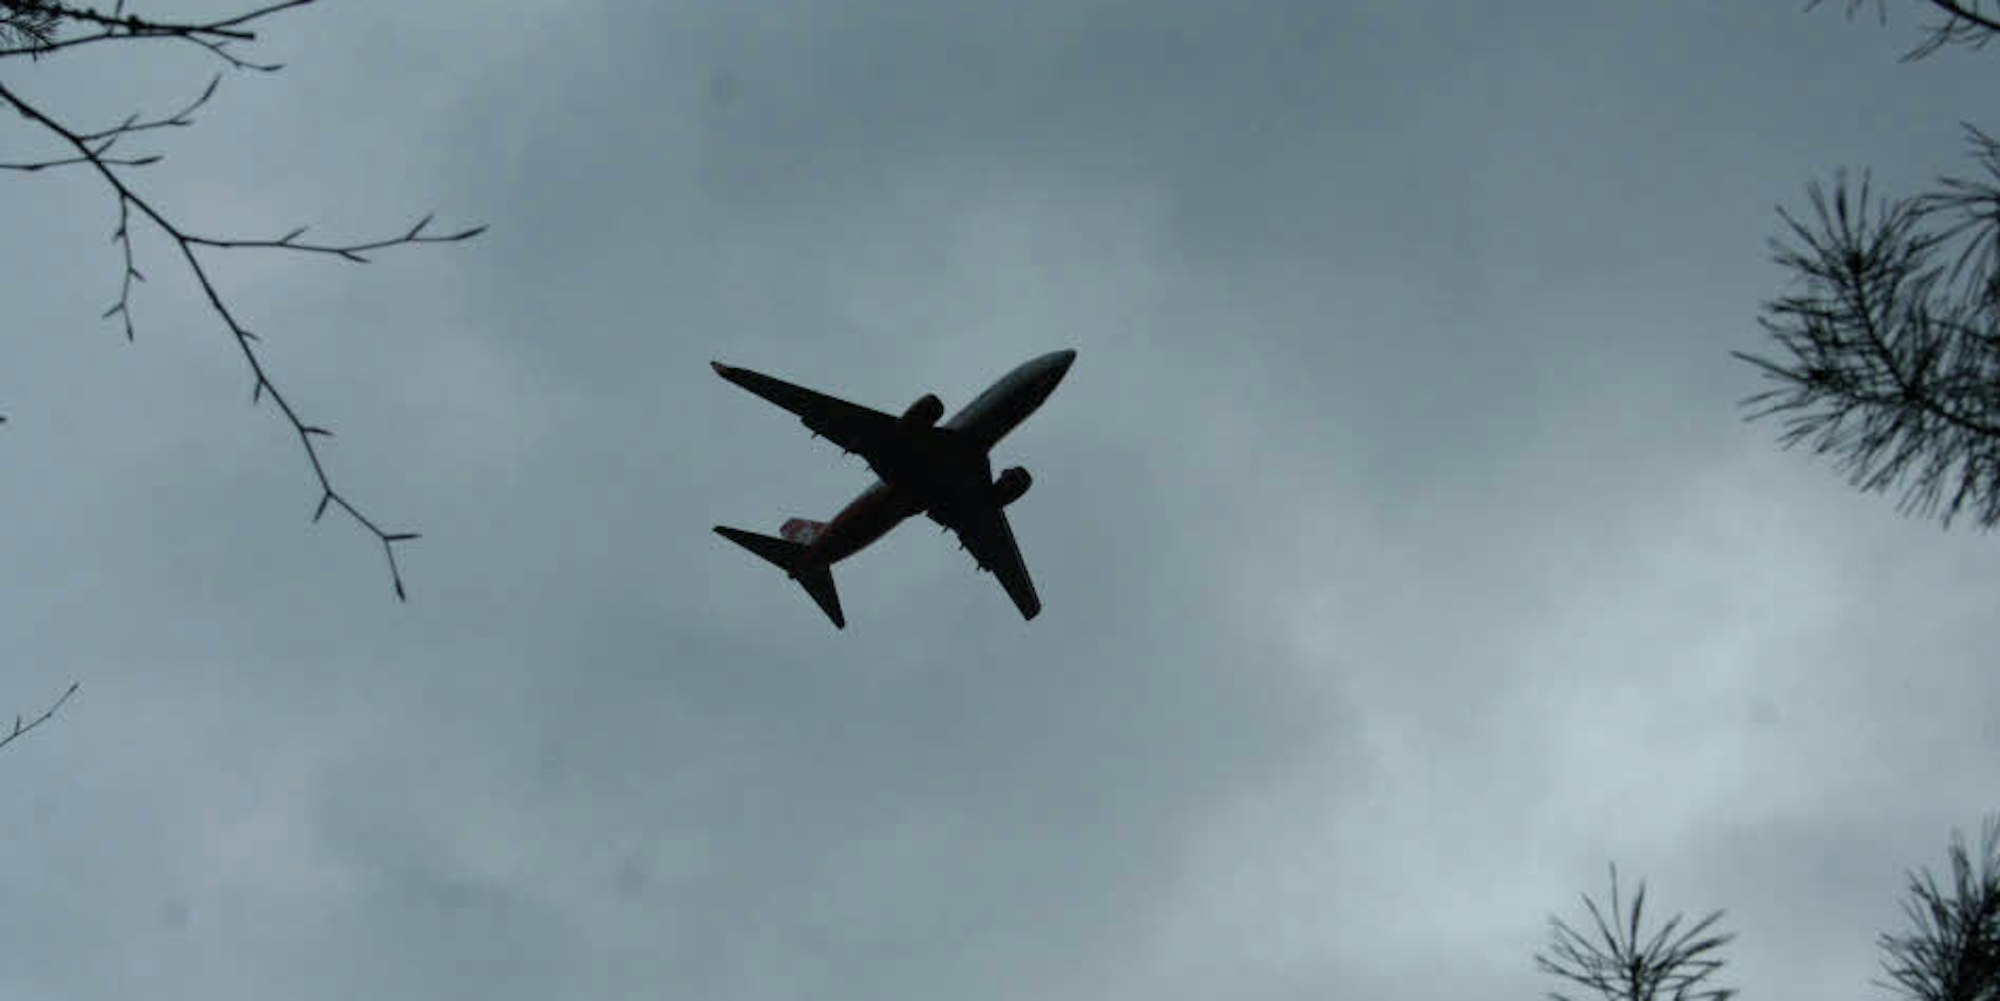 Viele Flugzeuge am Himmel bedeuten mehr Umsatz für den Flughafen, aber auch mehr Geräusche für die Menschen.